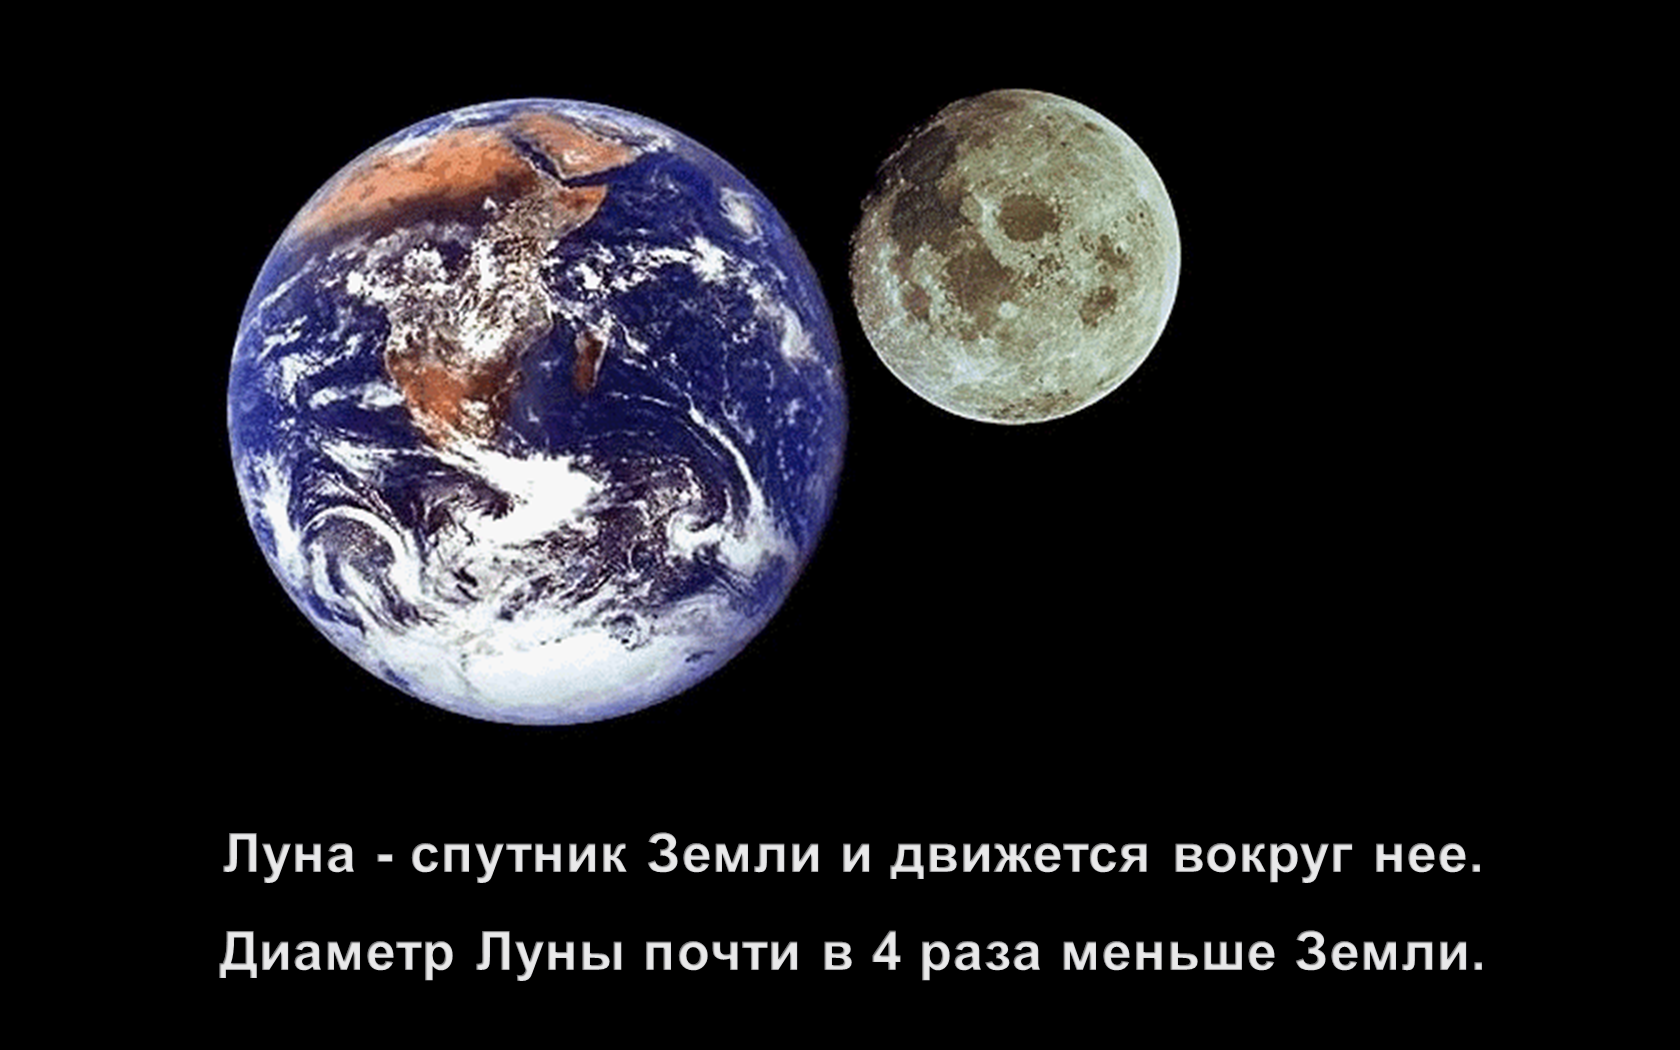 Урок по познания мира. Тема: Земля – космическое тело. Понятие о космосе. Изучение космоса человеком